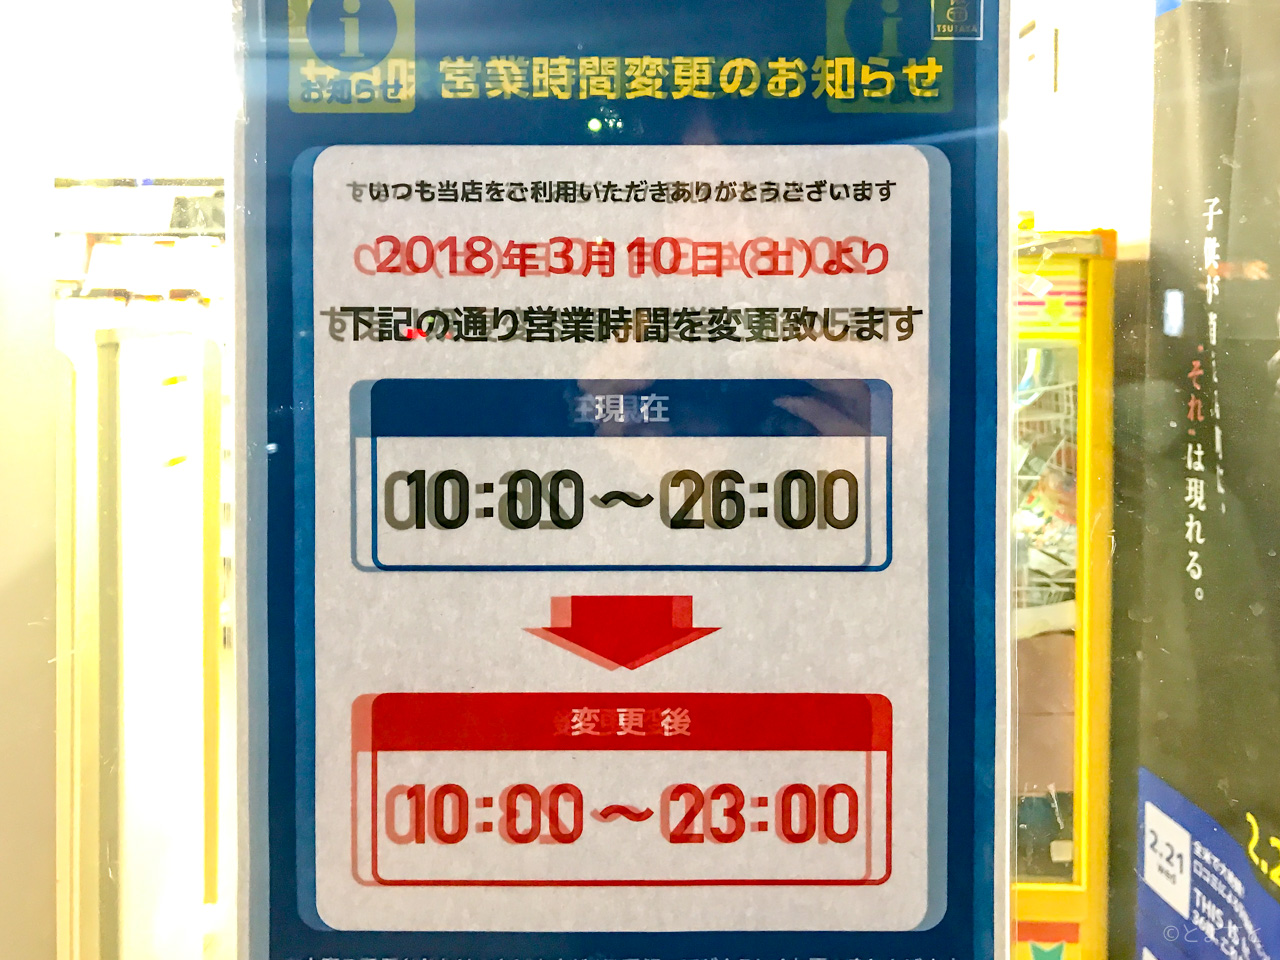 Tsutaya豊洲店 営業時間を縮小へ 閉店時間が23時に とよすと